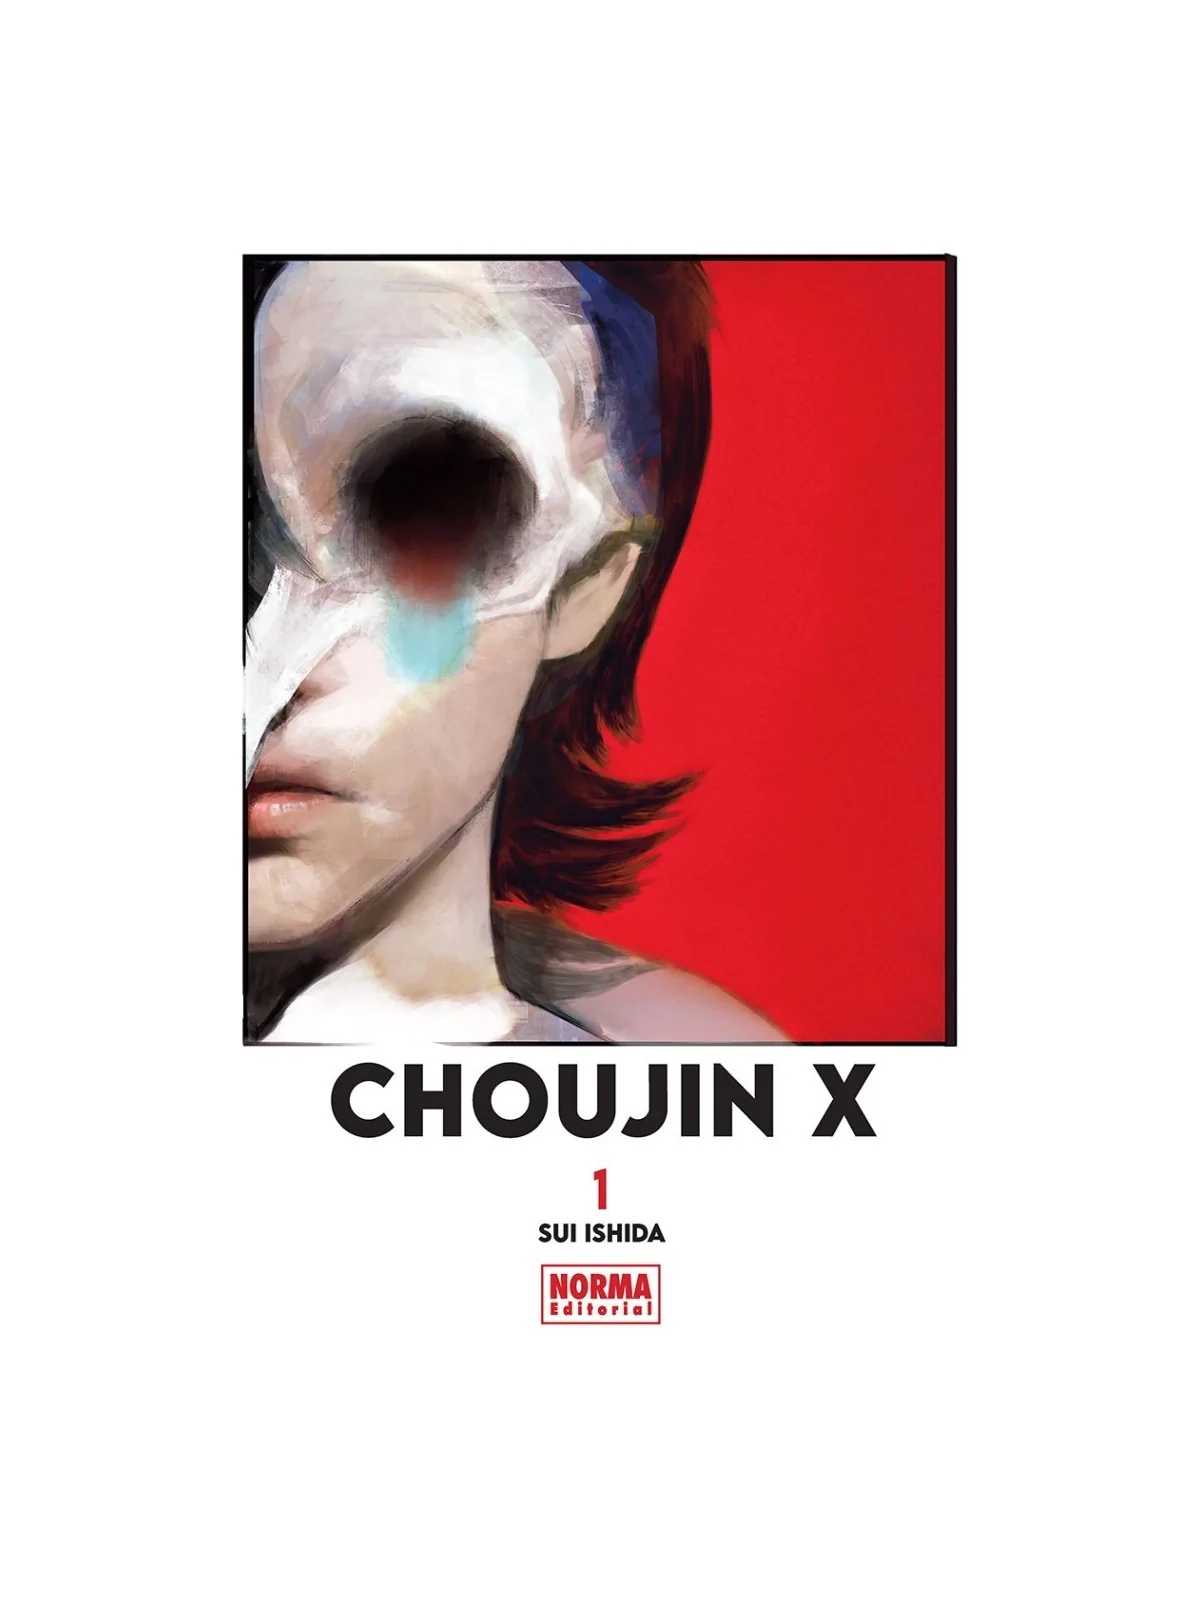 Comprar Choujin X 01 barato al mejor precio 8,55 € de Norma Editorial